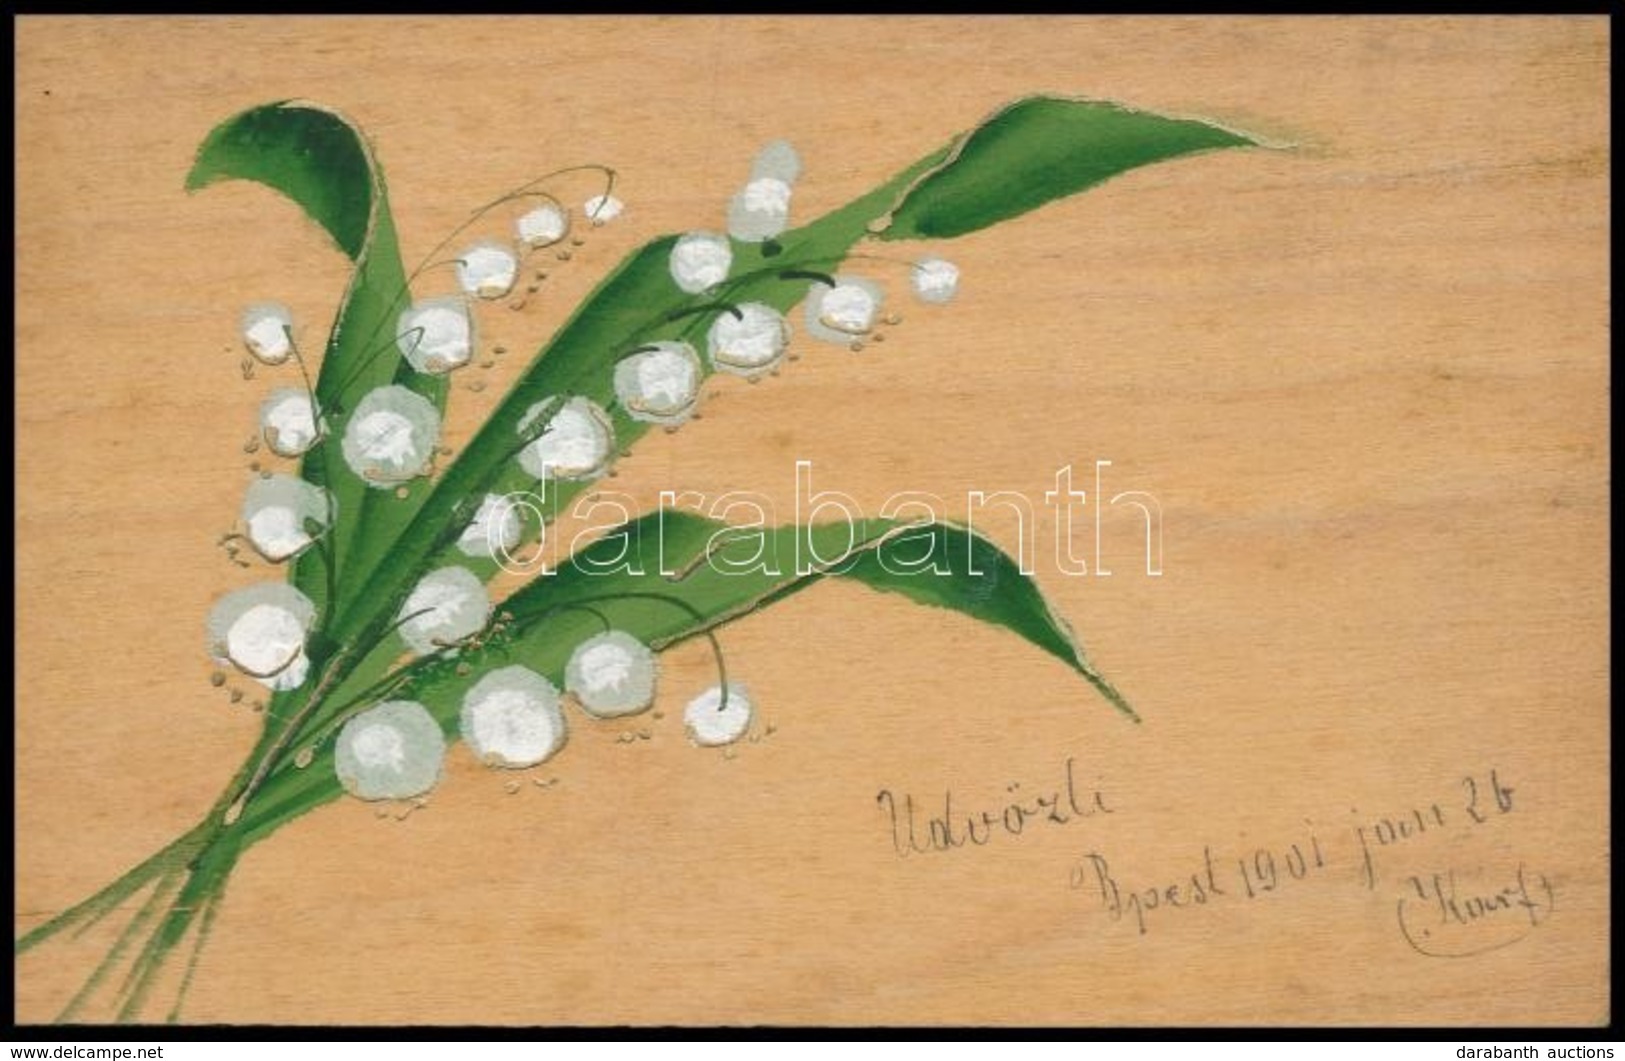 T3 Üdvözlőlap Fakéregből / Wooden Greeting Card With Flower (kis Szakadás / Small Tear) - Non Classificati